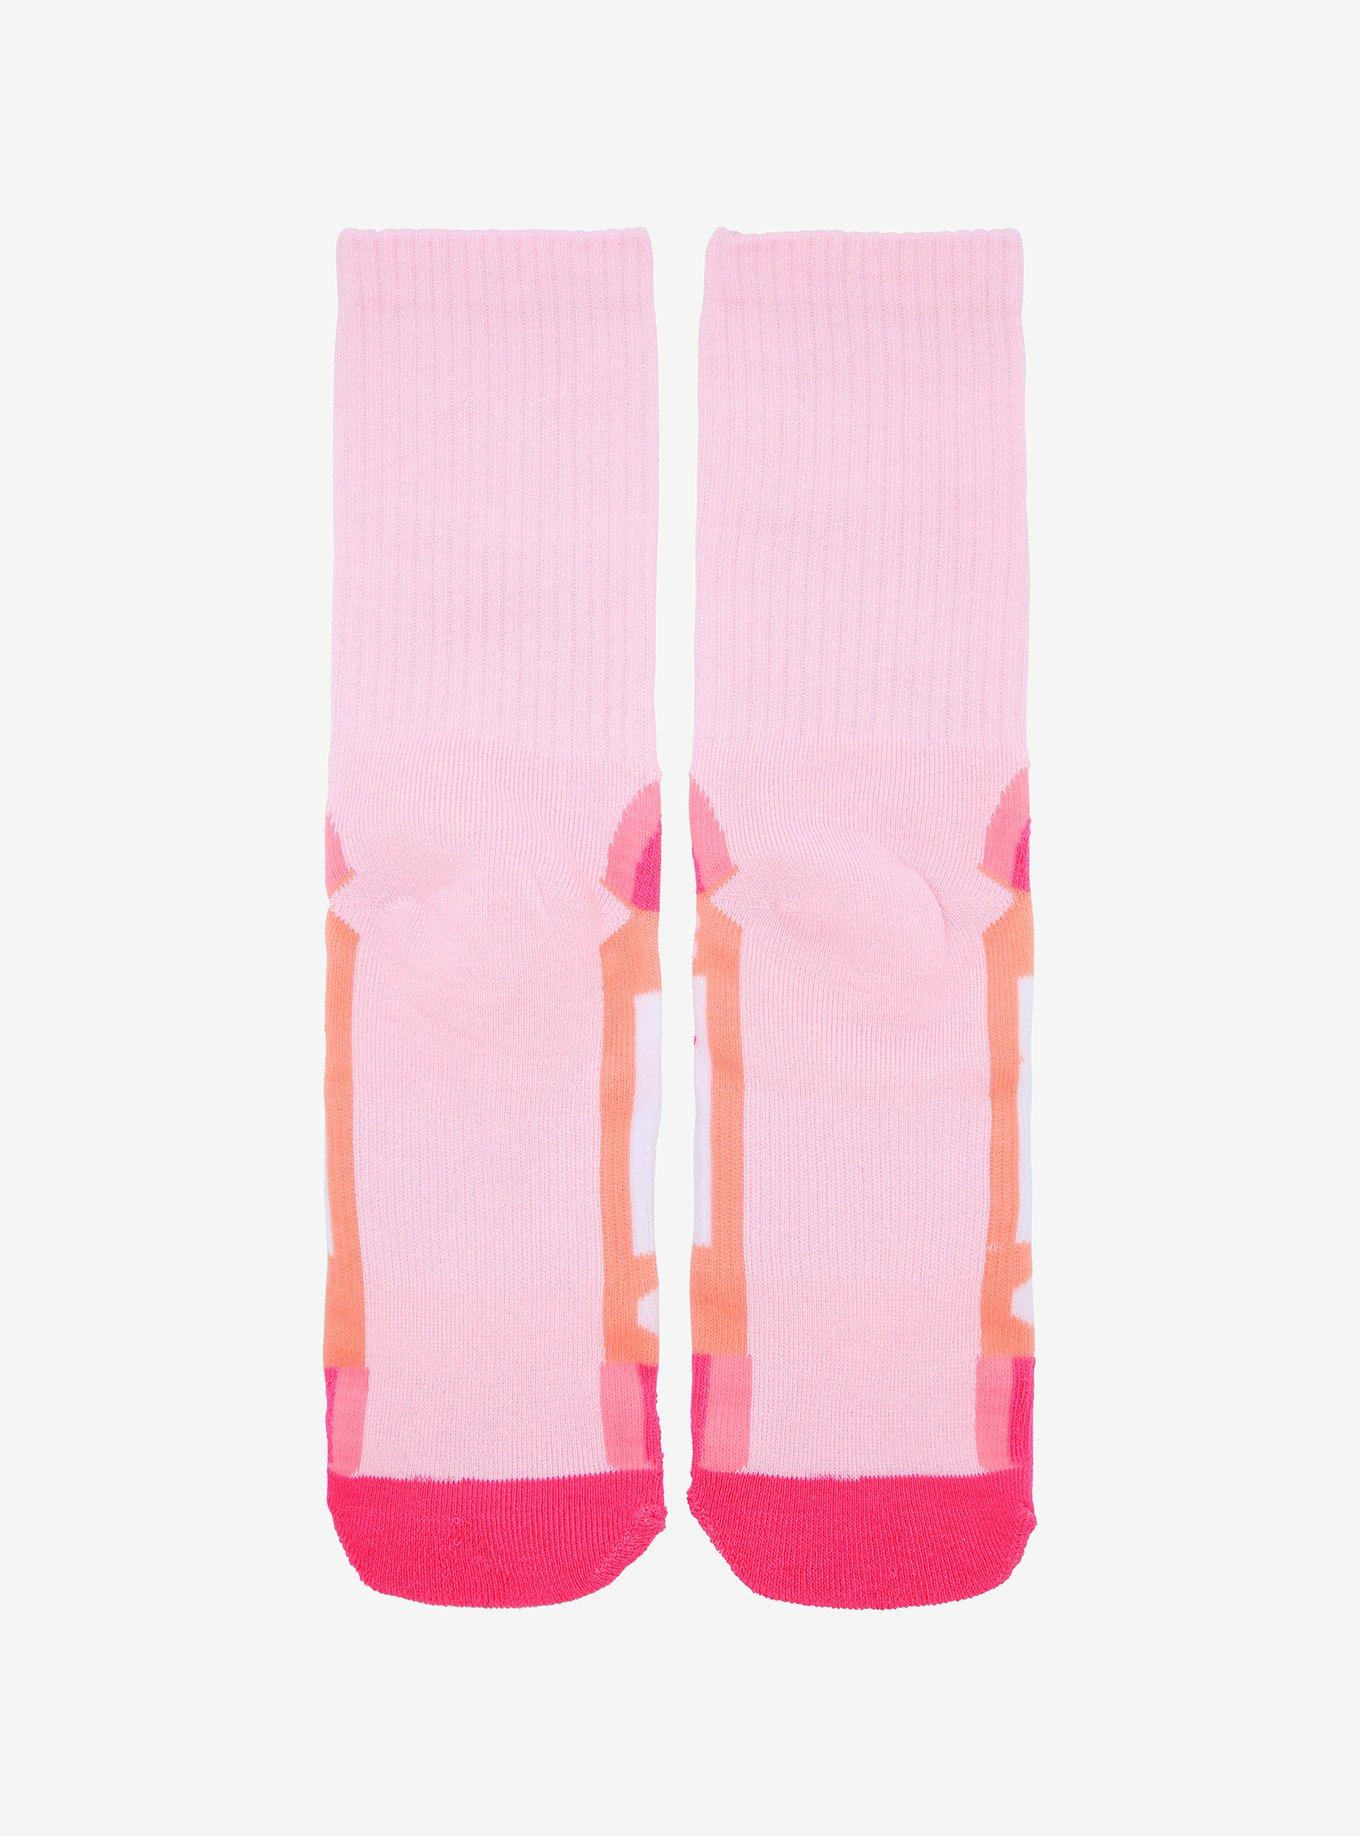 Soda Pop Pink Crew Socks, , alternate